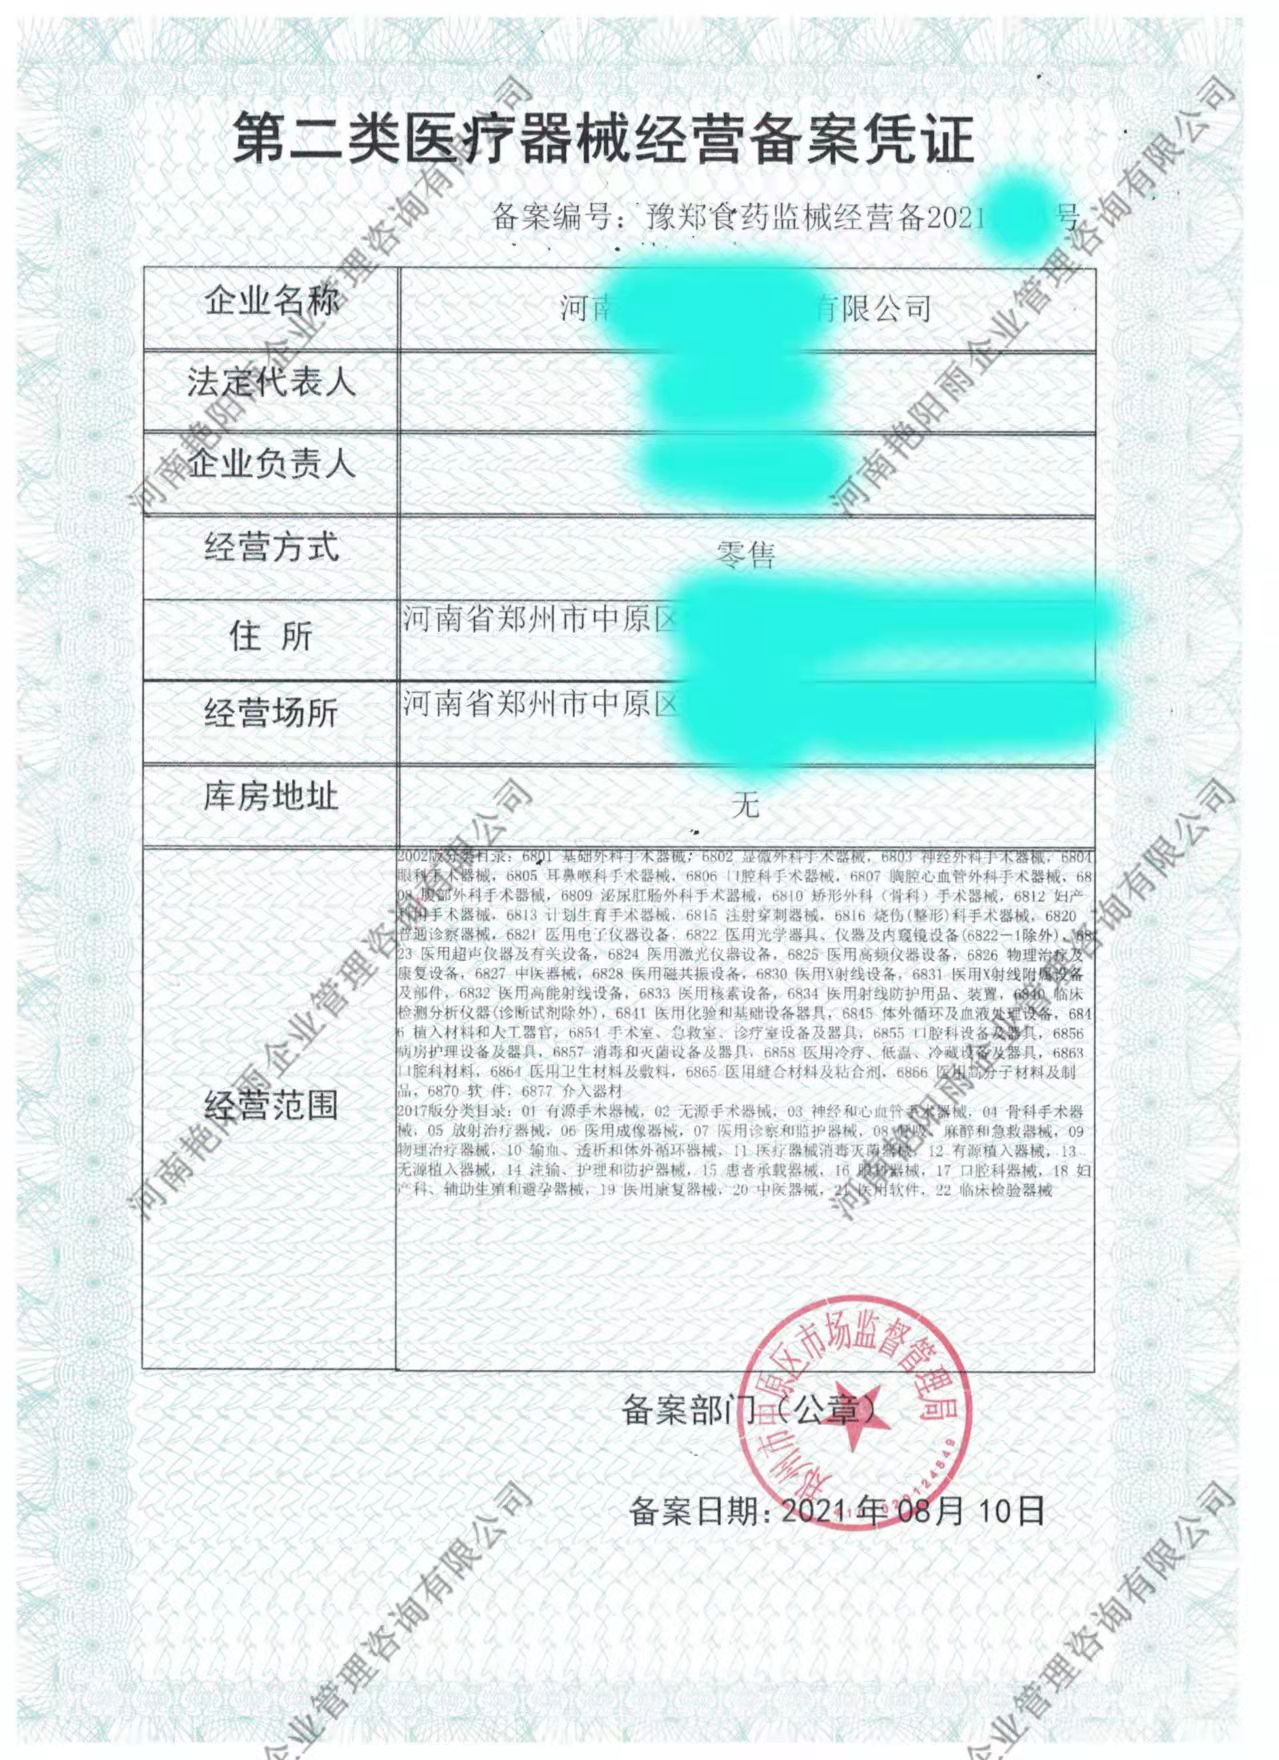 郑州市郑州东区办理医疗器械网络销售备案凭证流程